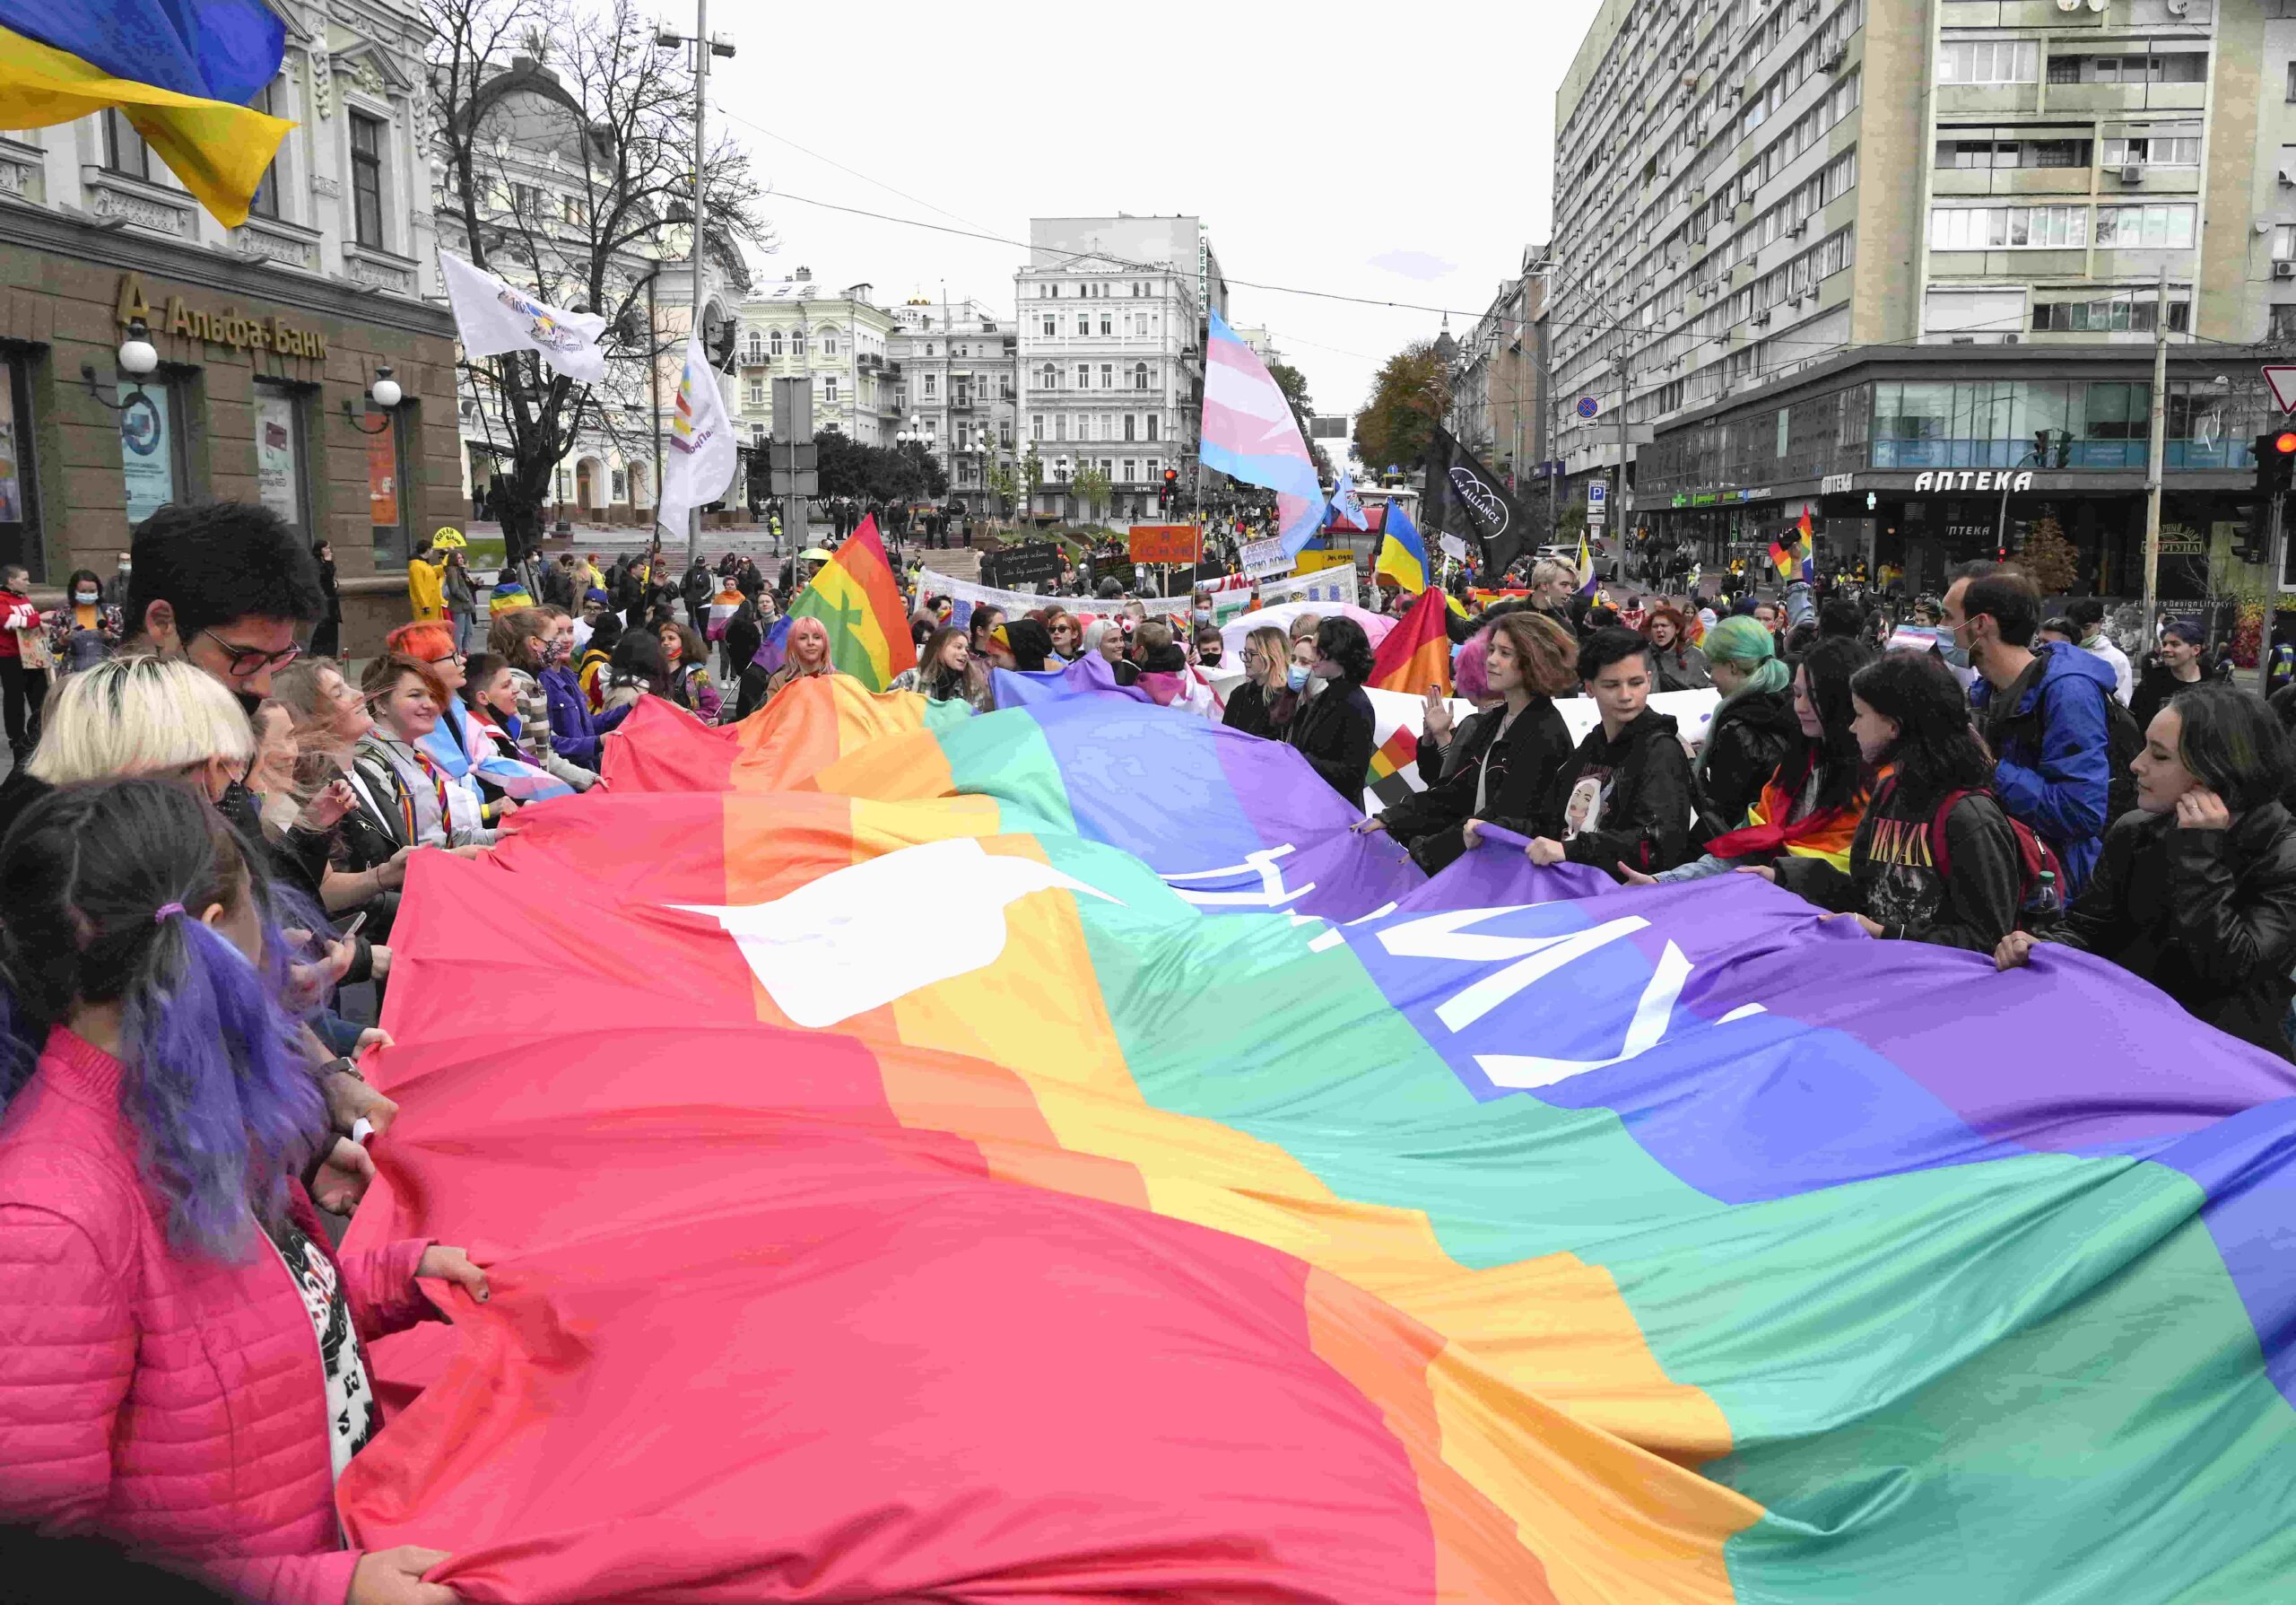 Rainbow flag burned at Ukraine Pride event